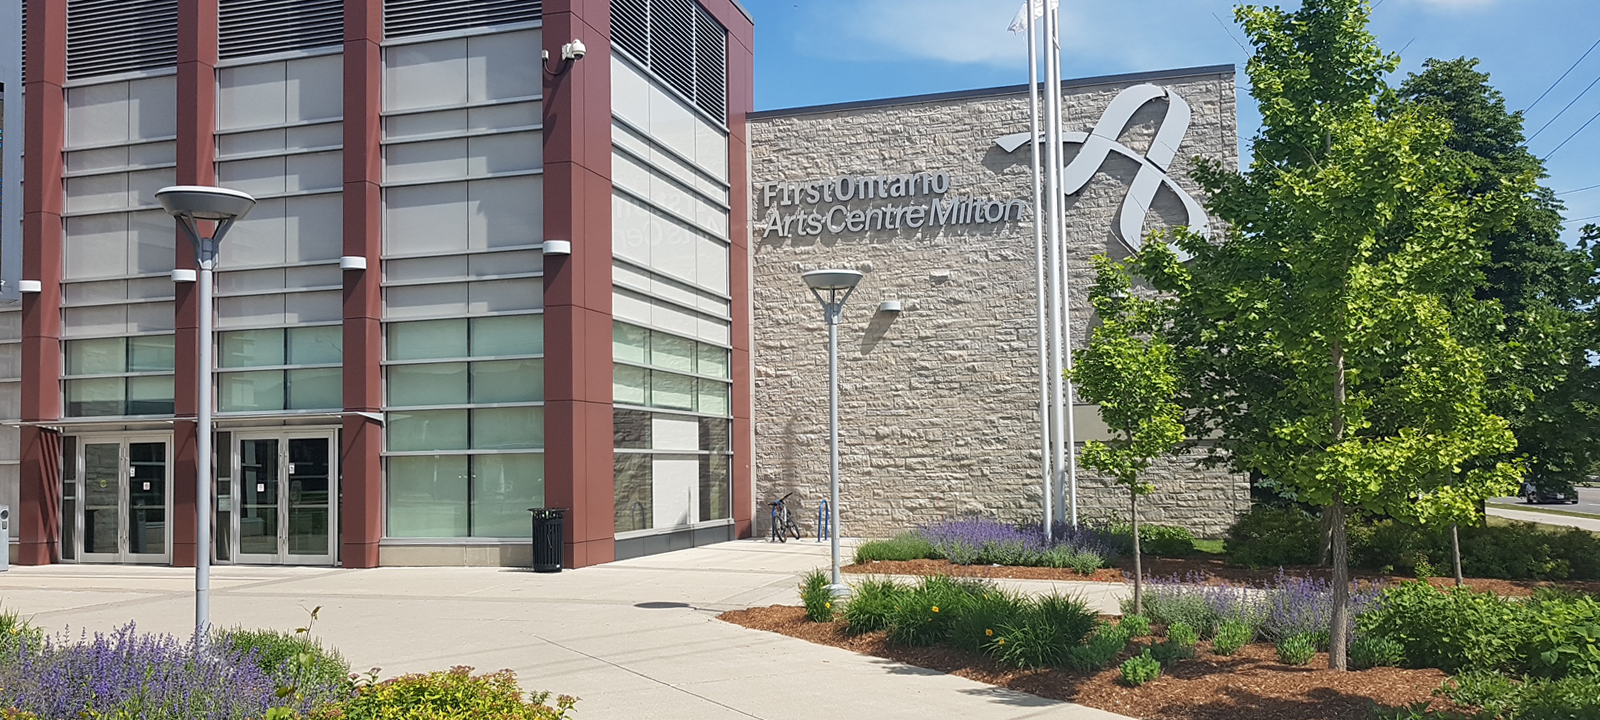 Exterior photo of FirstOntario Arts Centre Milton